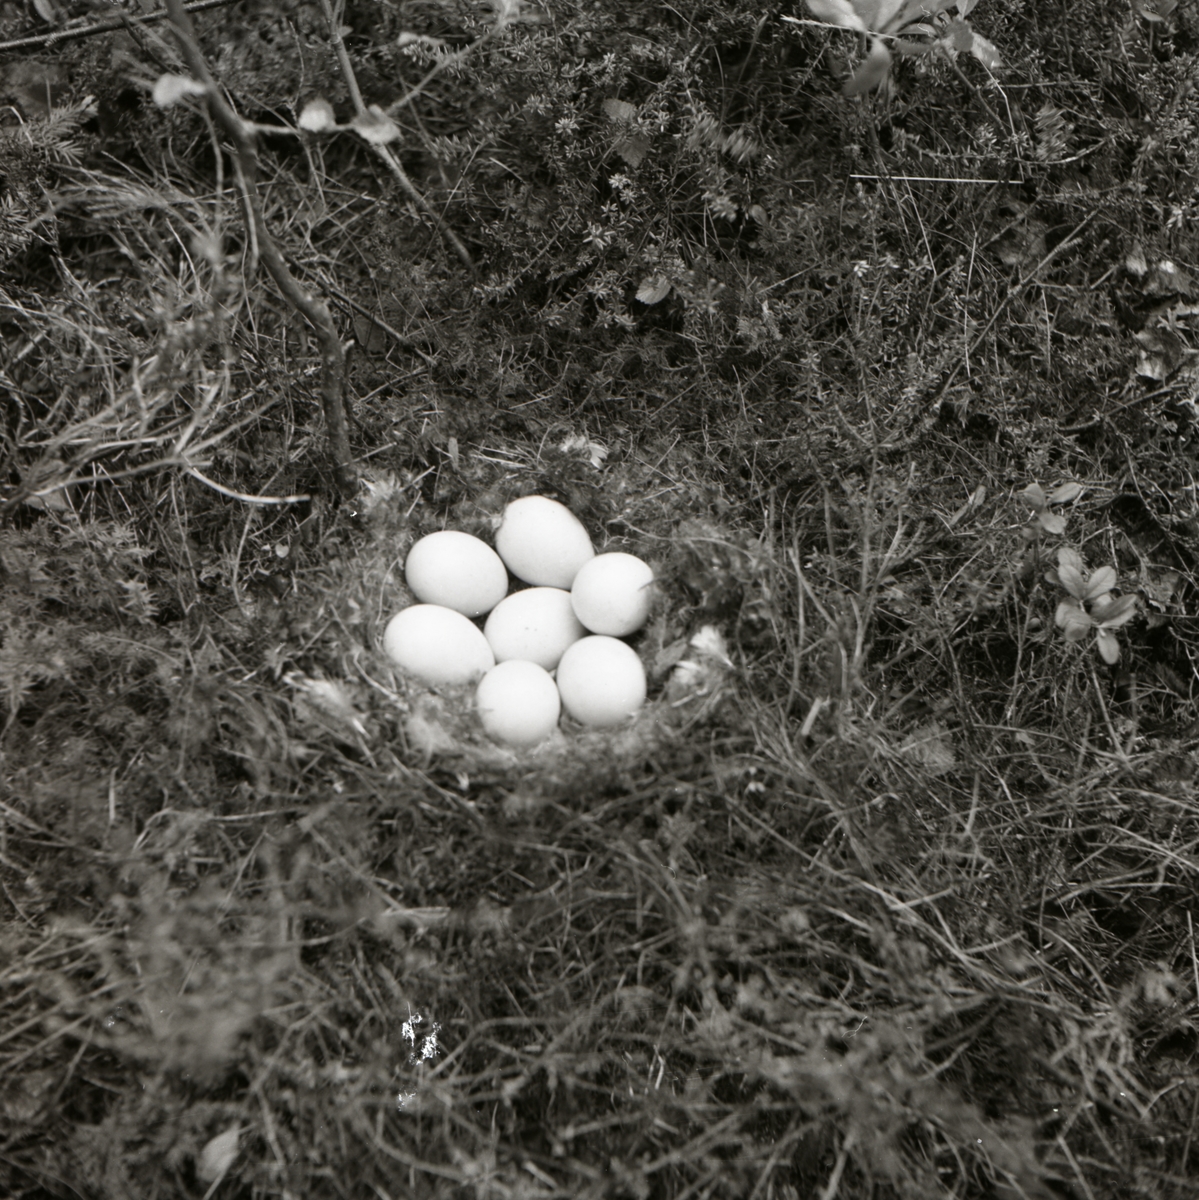 På marken har en fågel byggt ett bo och lagt ägg, troligen bergandsägg.